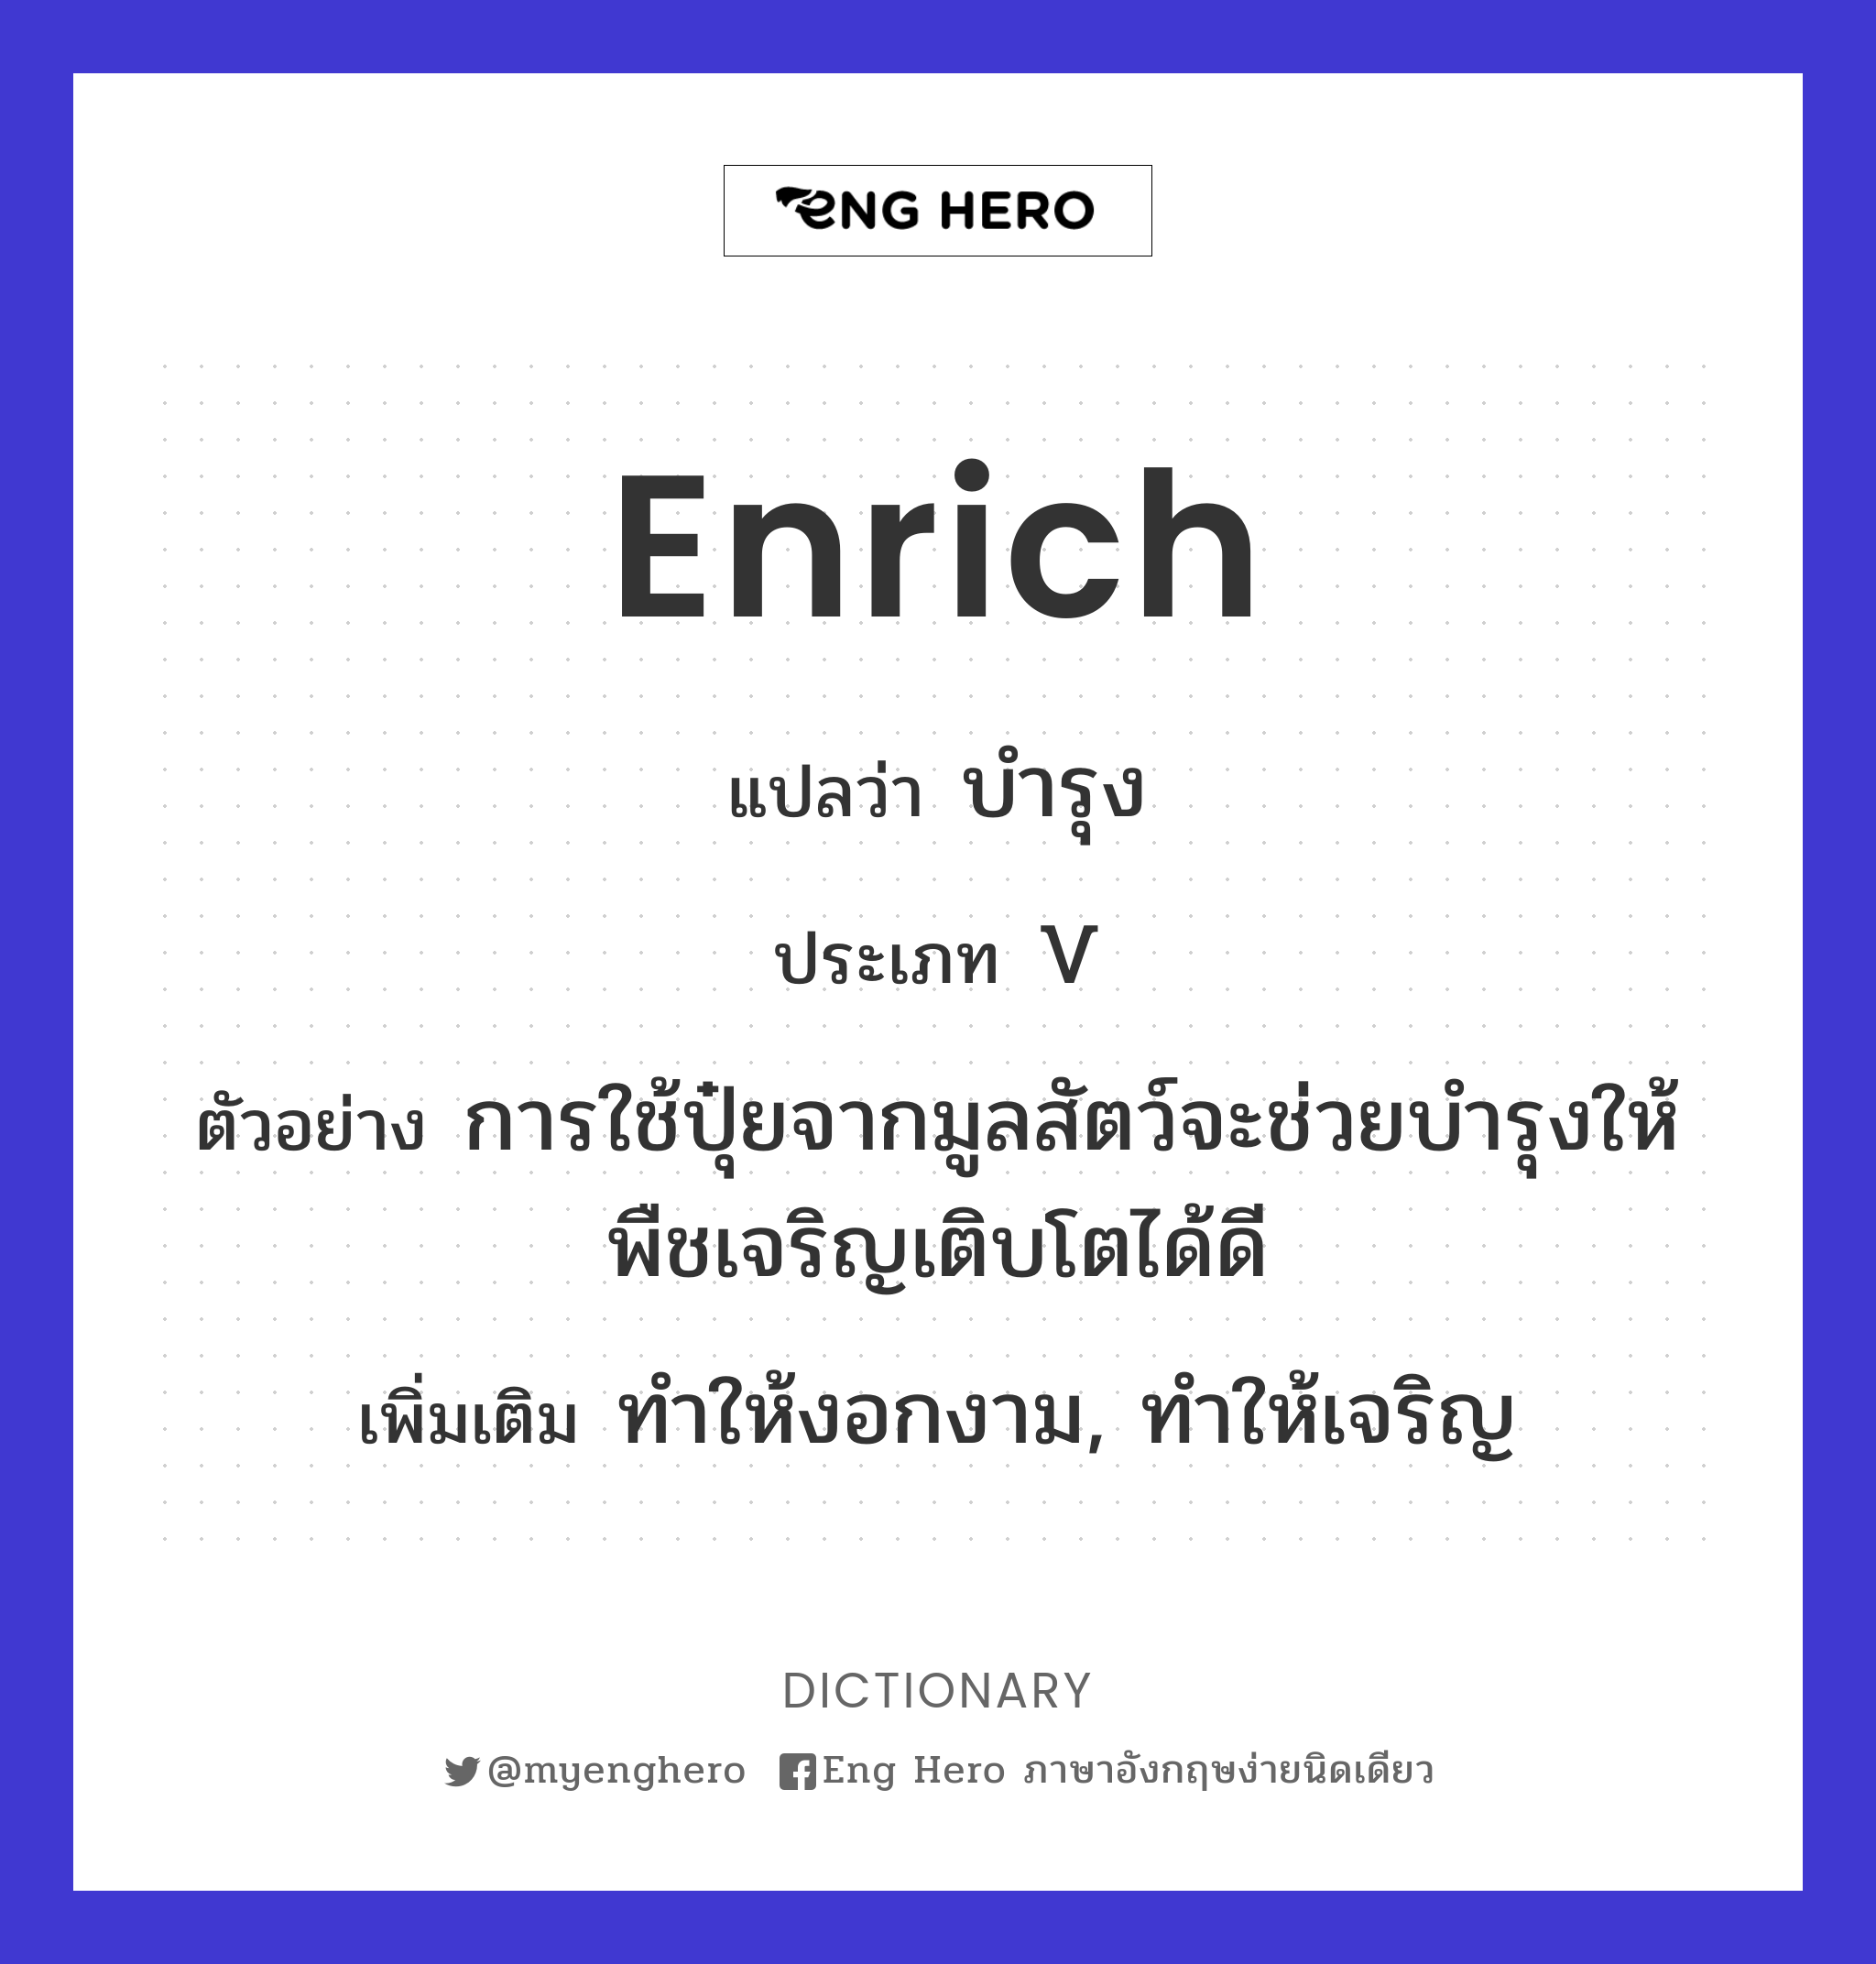 enrich